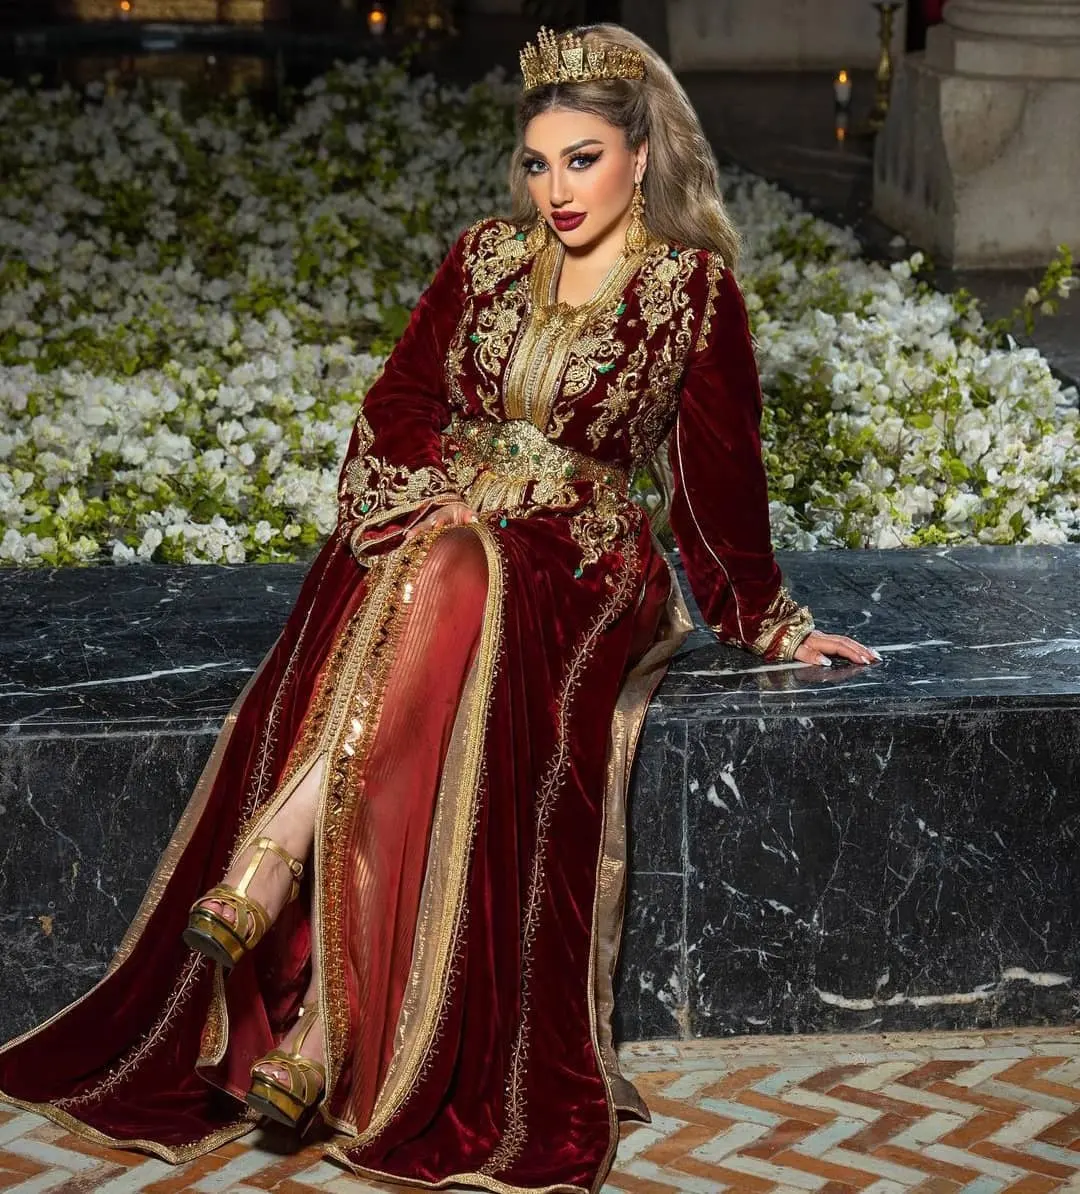 Marok kanis cher Kaftan aus Samt und Seide mit goldener Handarbeit für Hochzeit und Party